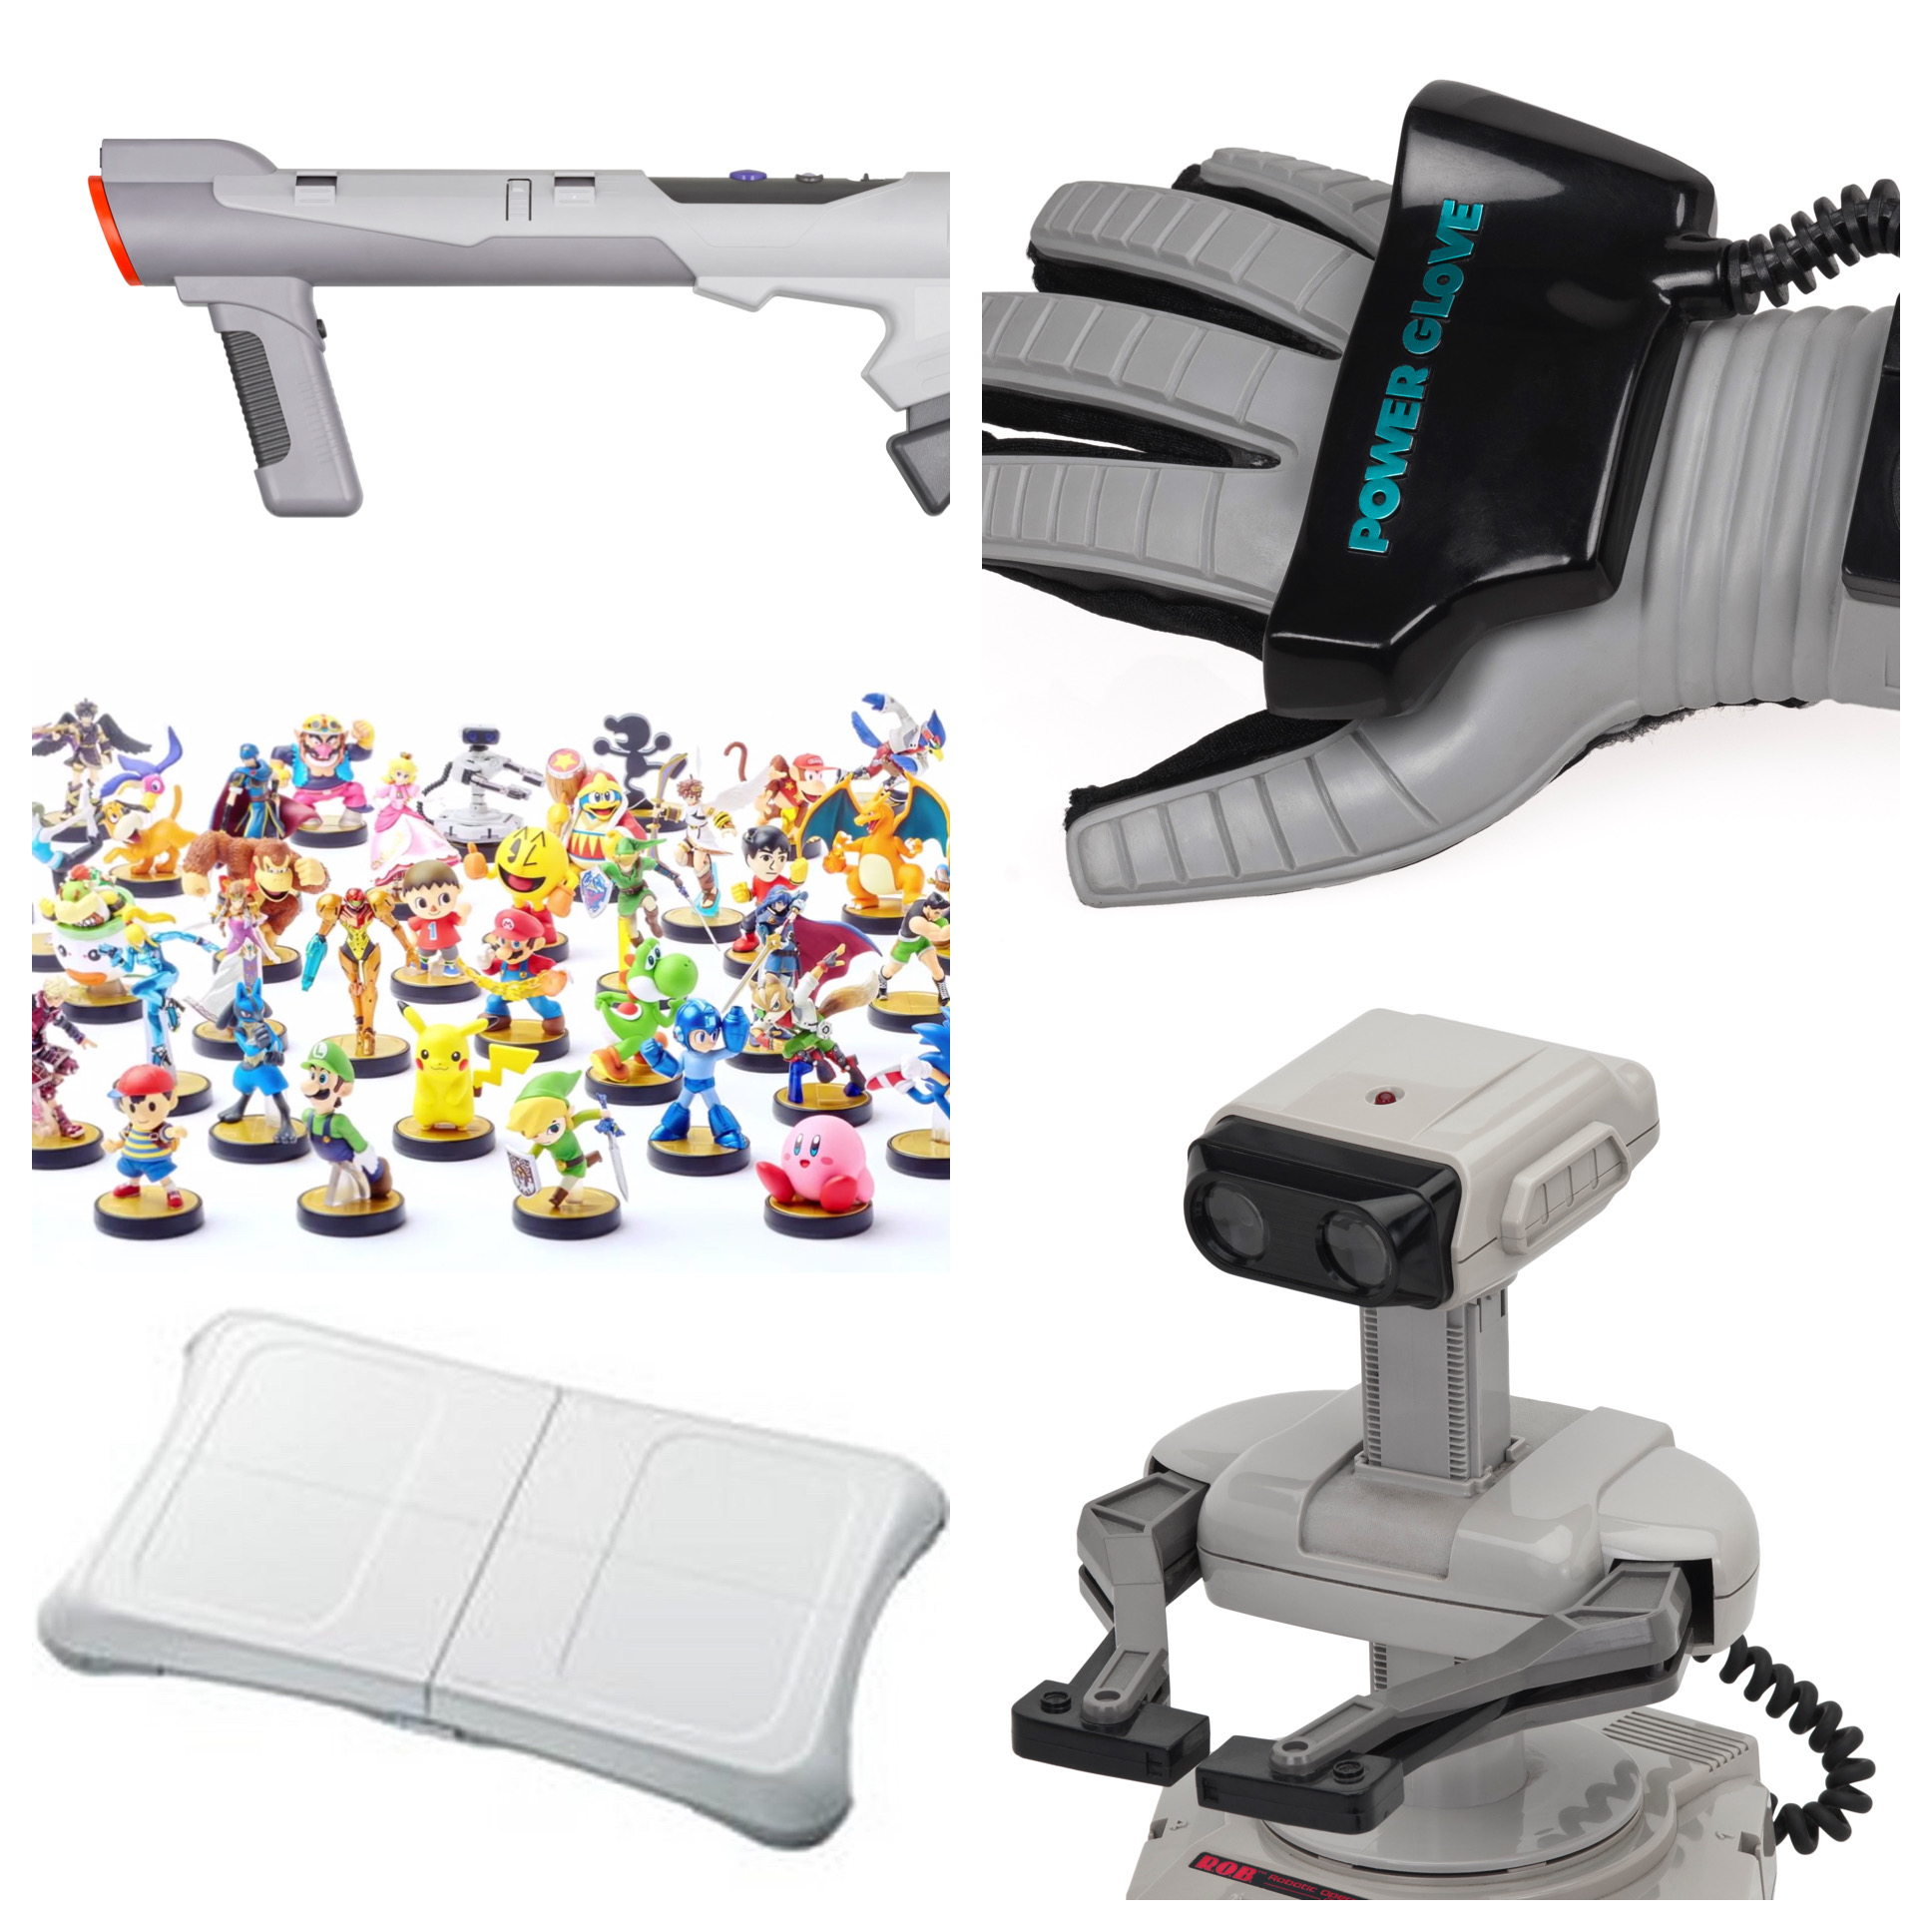 Best Nintendo Accessories